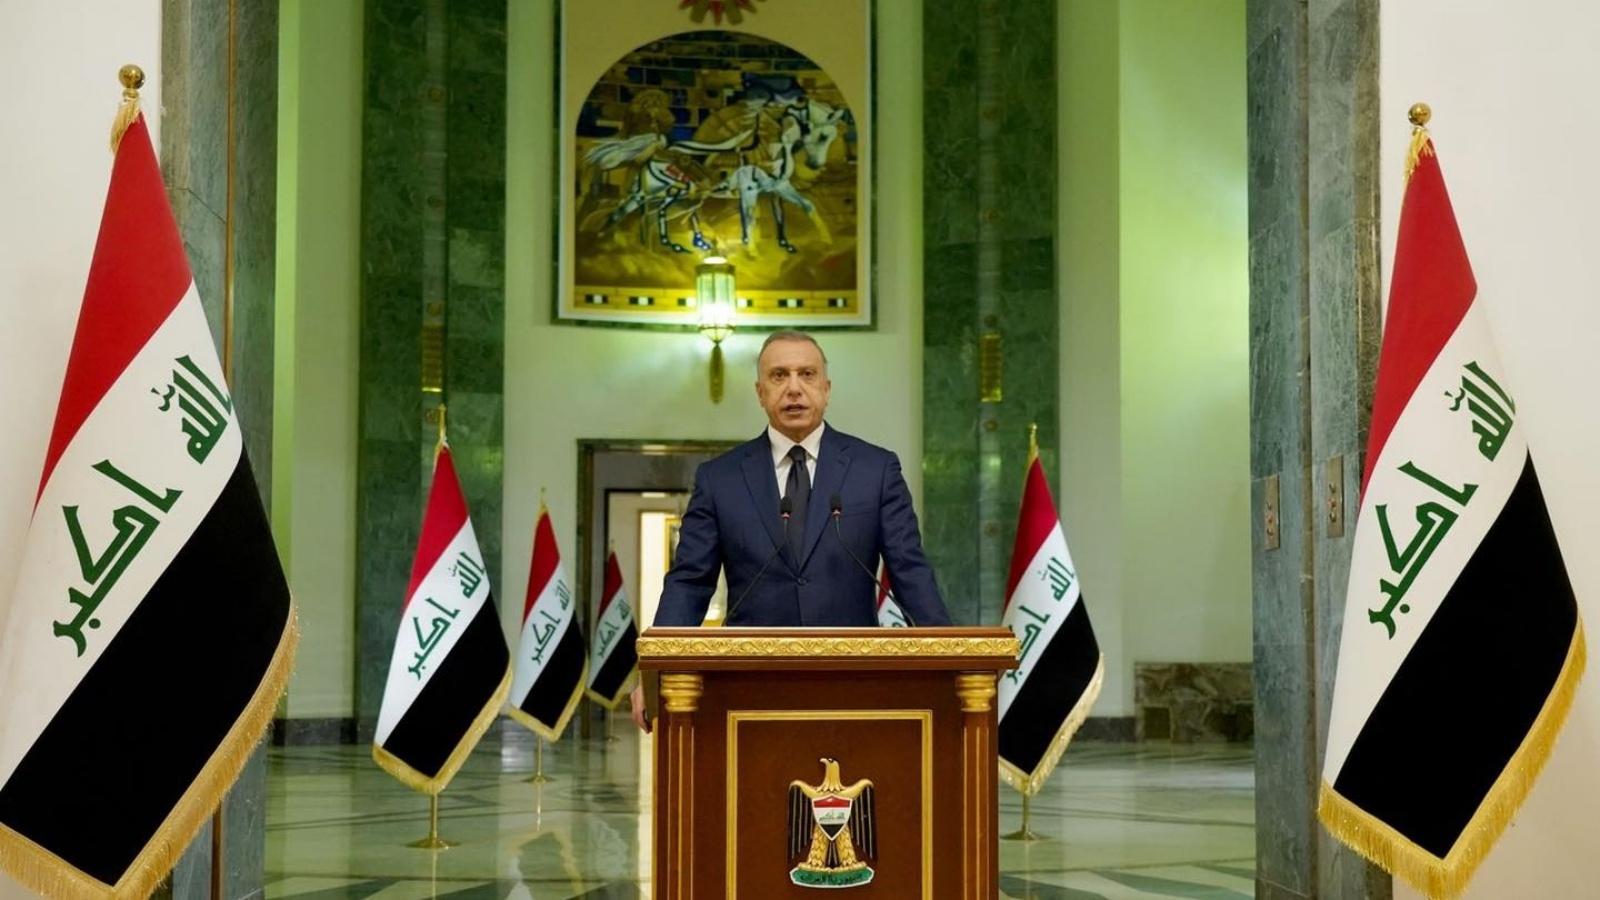 الكاظمي موجهاً كلمة وداع الى العراقيين الخميس 27 أكتوبر 2022 لمناسبة انتهاء ولايته رئيساً للوزراء في العراق (مكتبه)